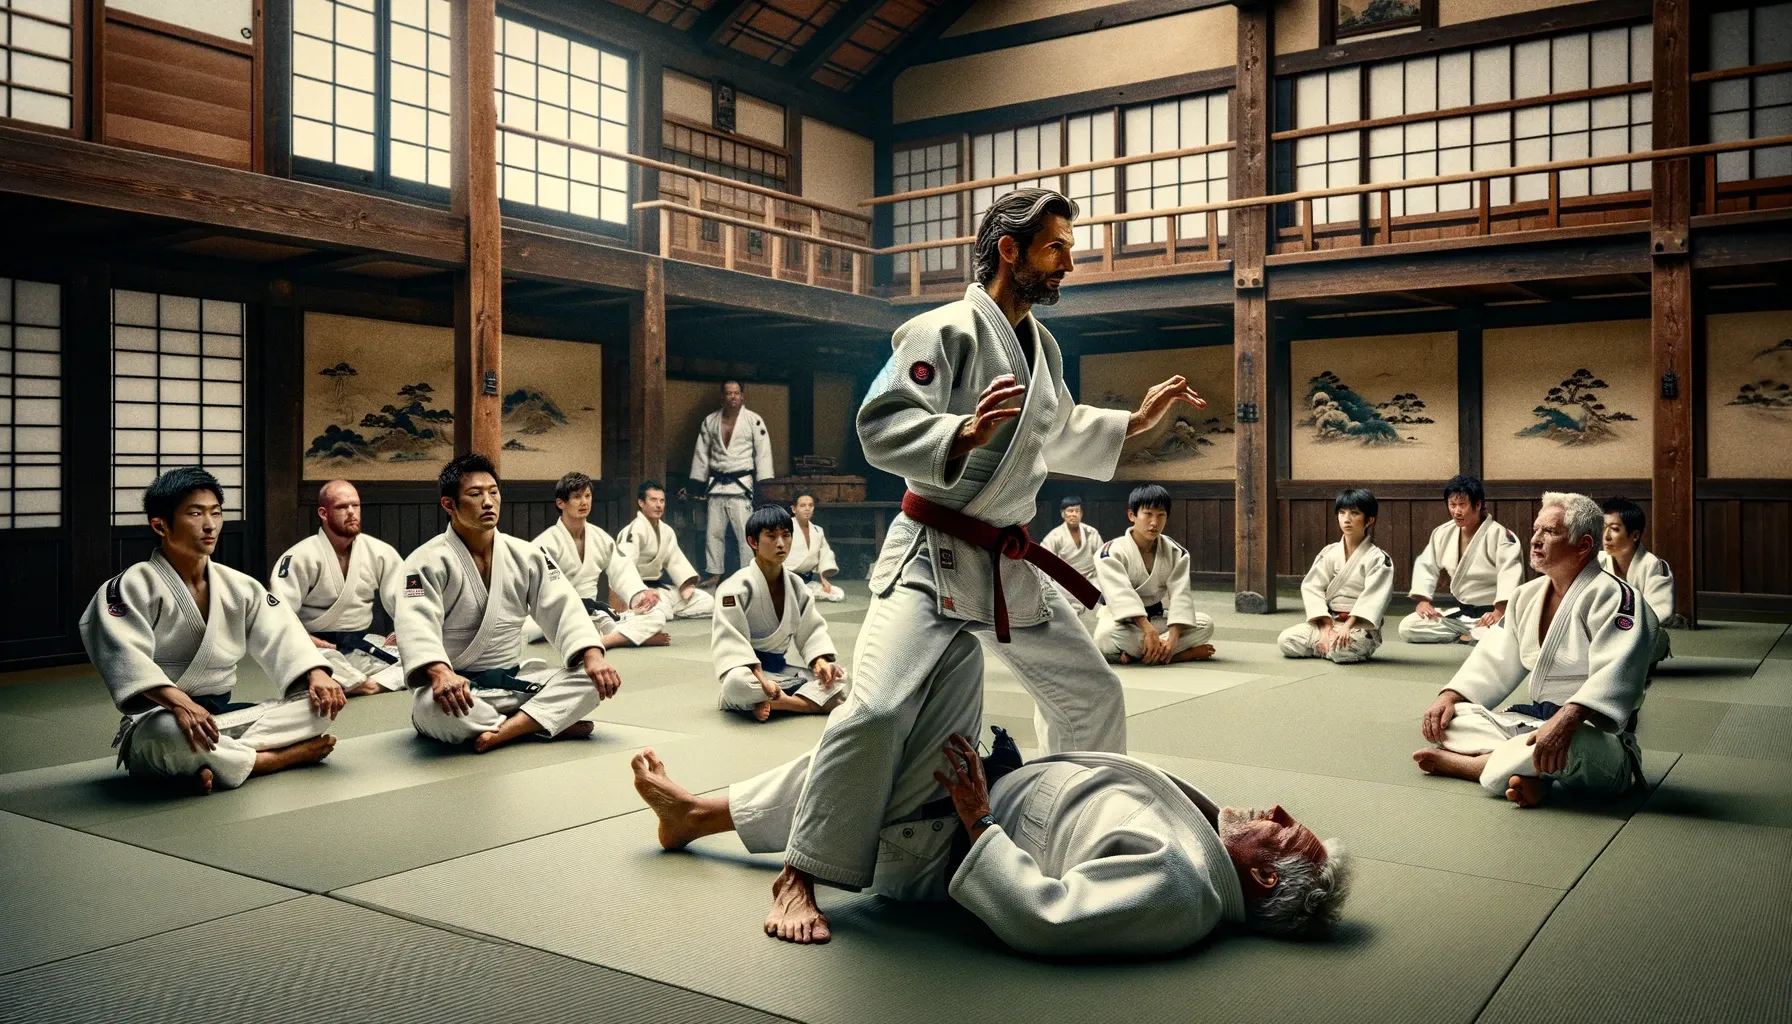 AI-gegenereerde afbeelding van een traditionele oude Japanse dojo met judokas in training, waaronder jeugd- en volwassen atleten. De dojo weerspiegelt een authentieke sfeer van historische judopraktijk.